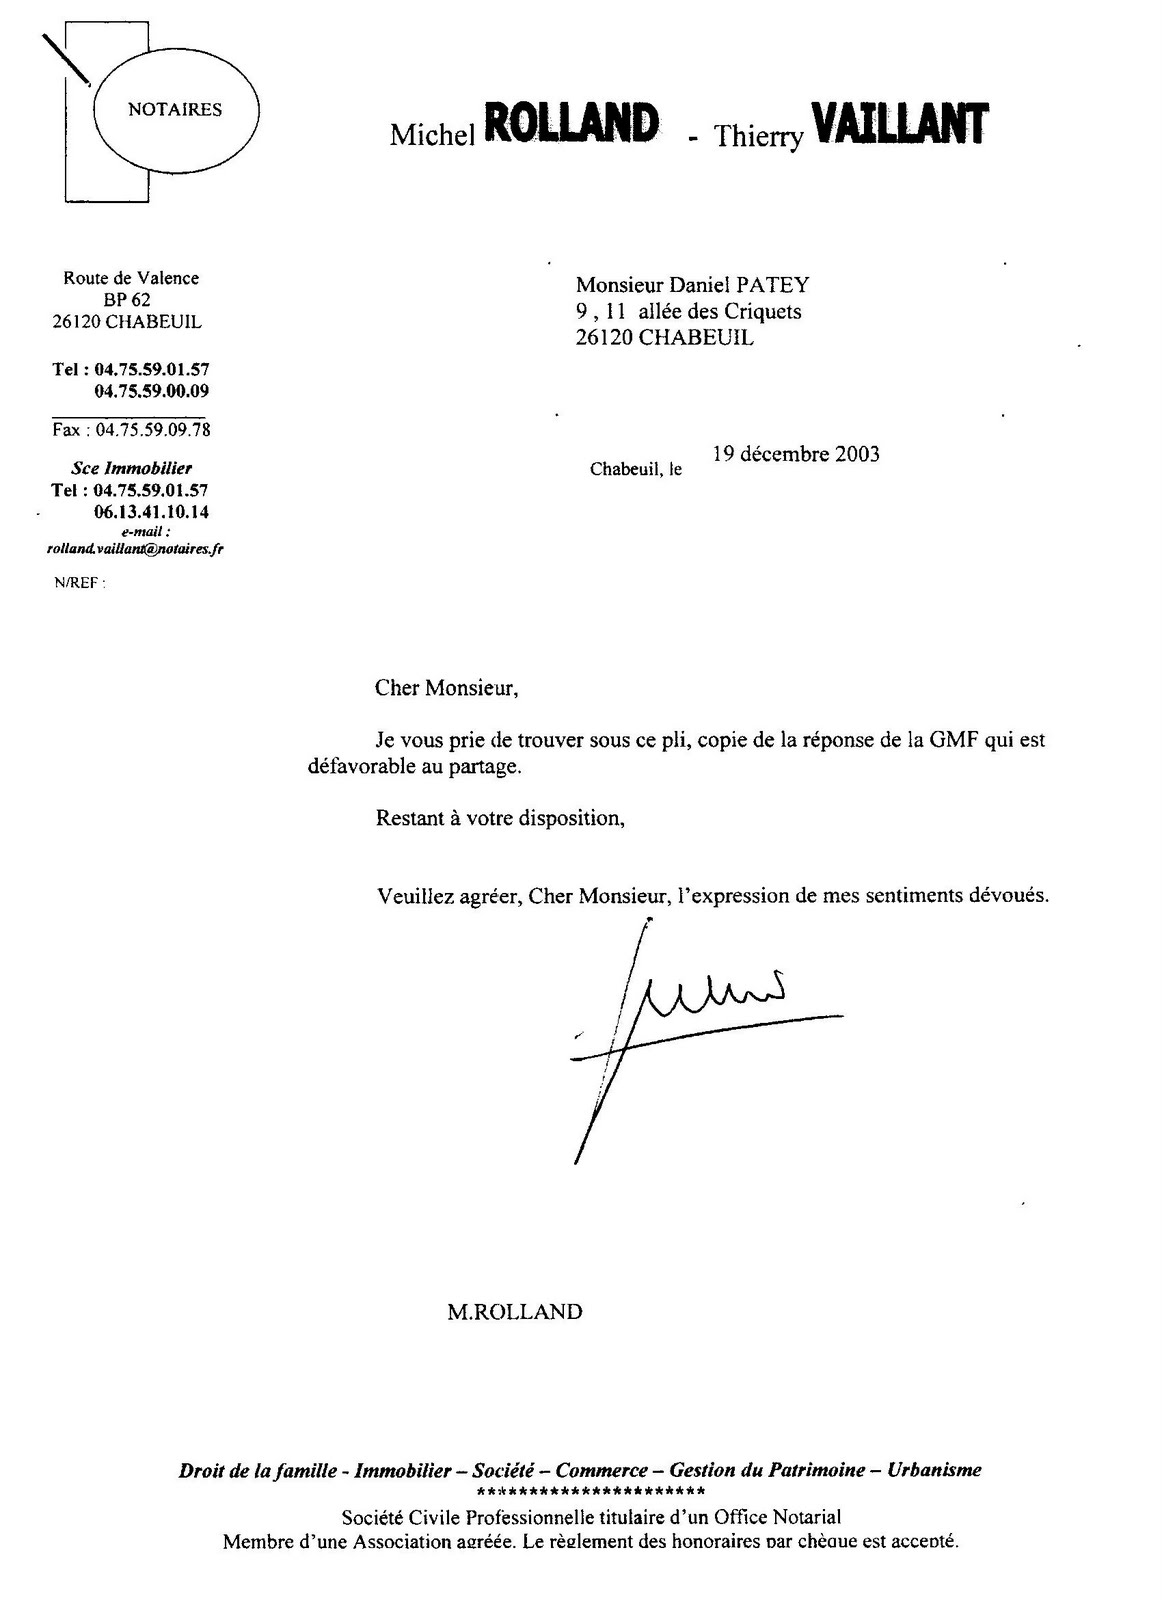 lettre du notaire de 2003 signifiant le refus de GMF a vente amiable